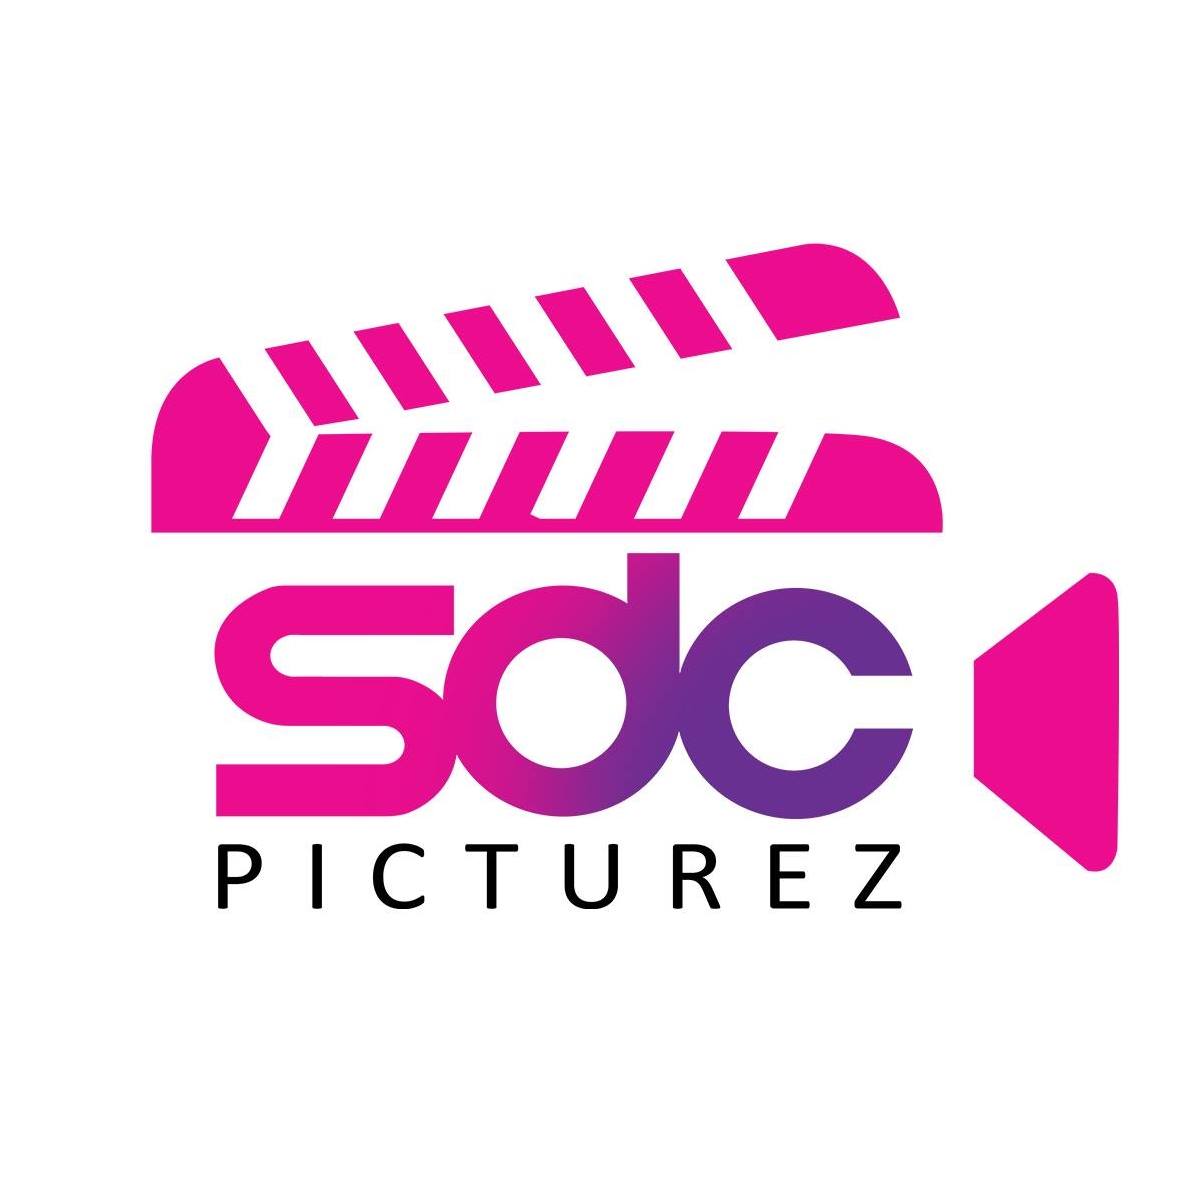 SDC Picturez